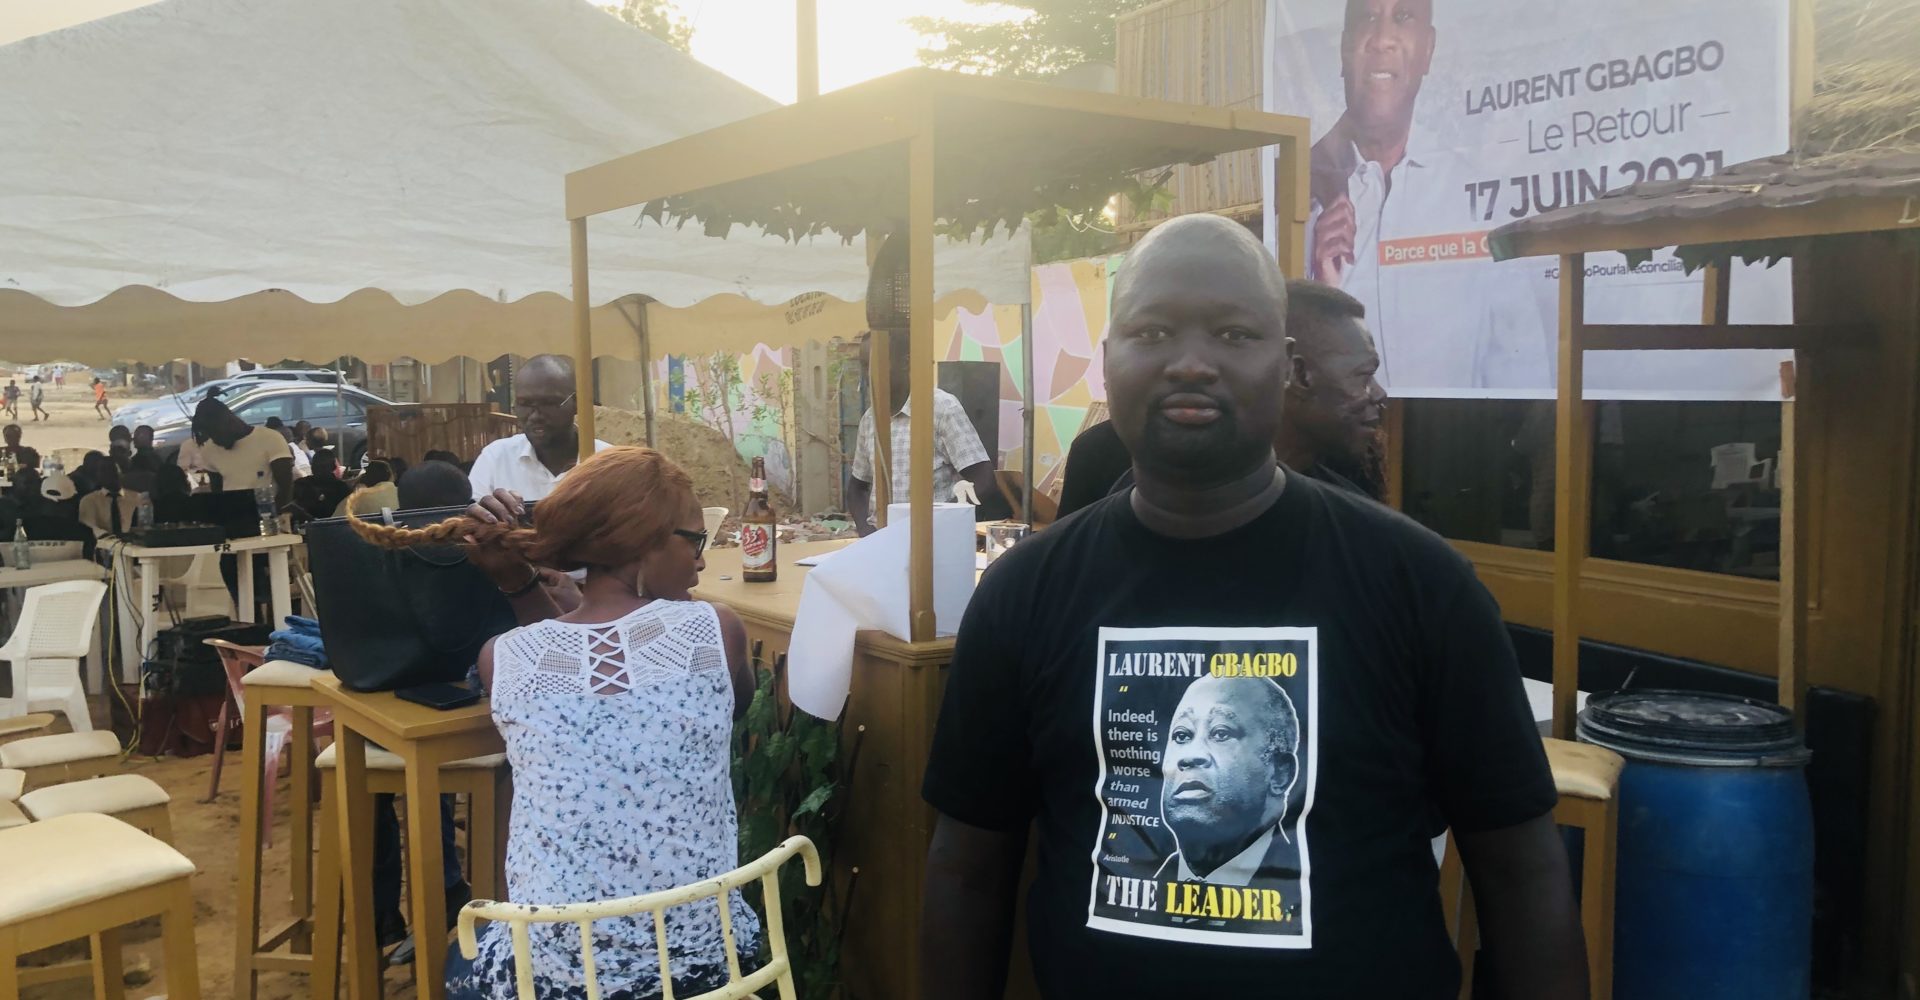 Le retour de Gbagbo en Côte d’Ivoire célébré aussi à N’Djamena 1